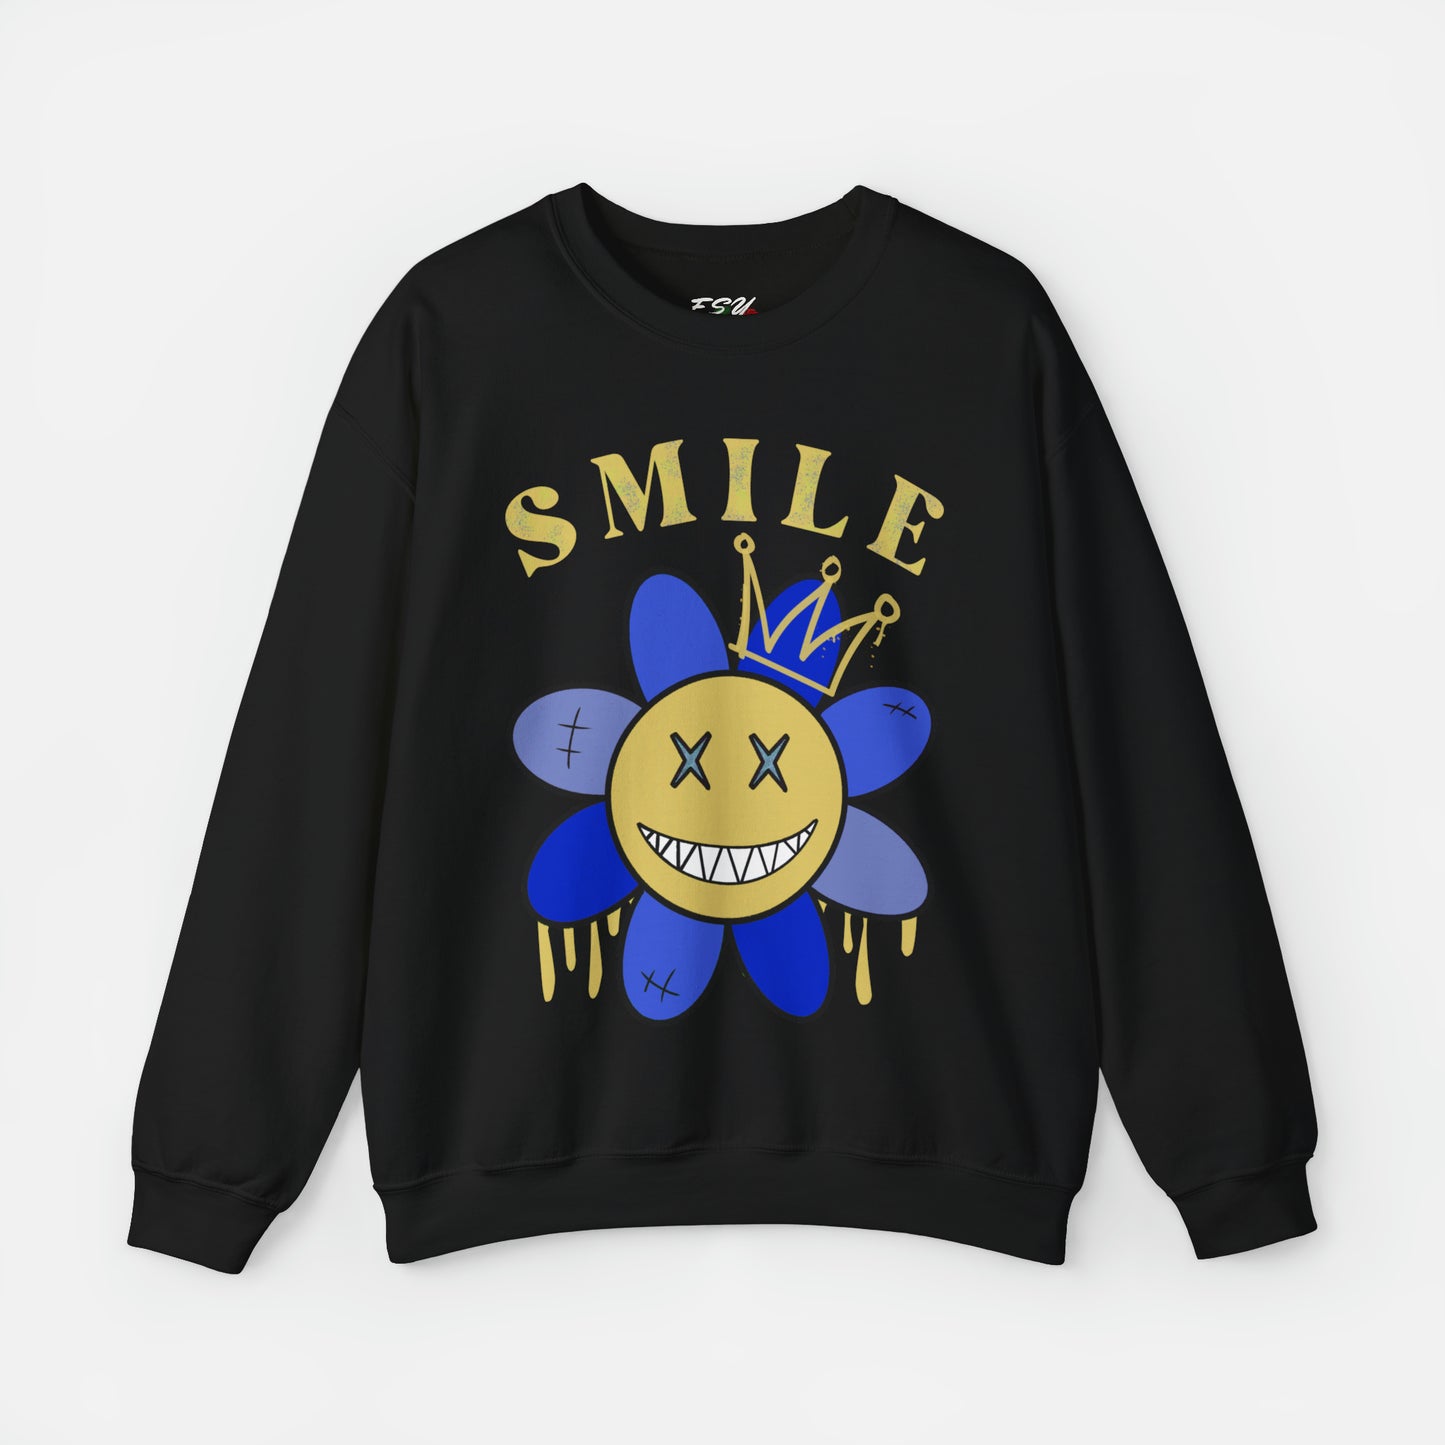 Smile - Sweatshirt